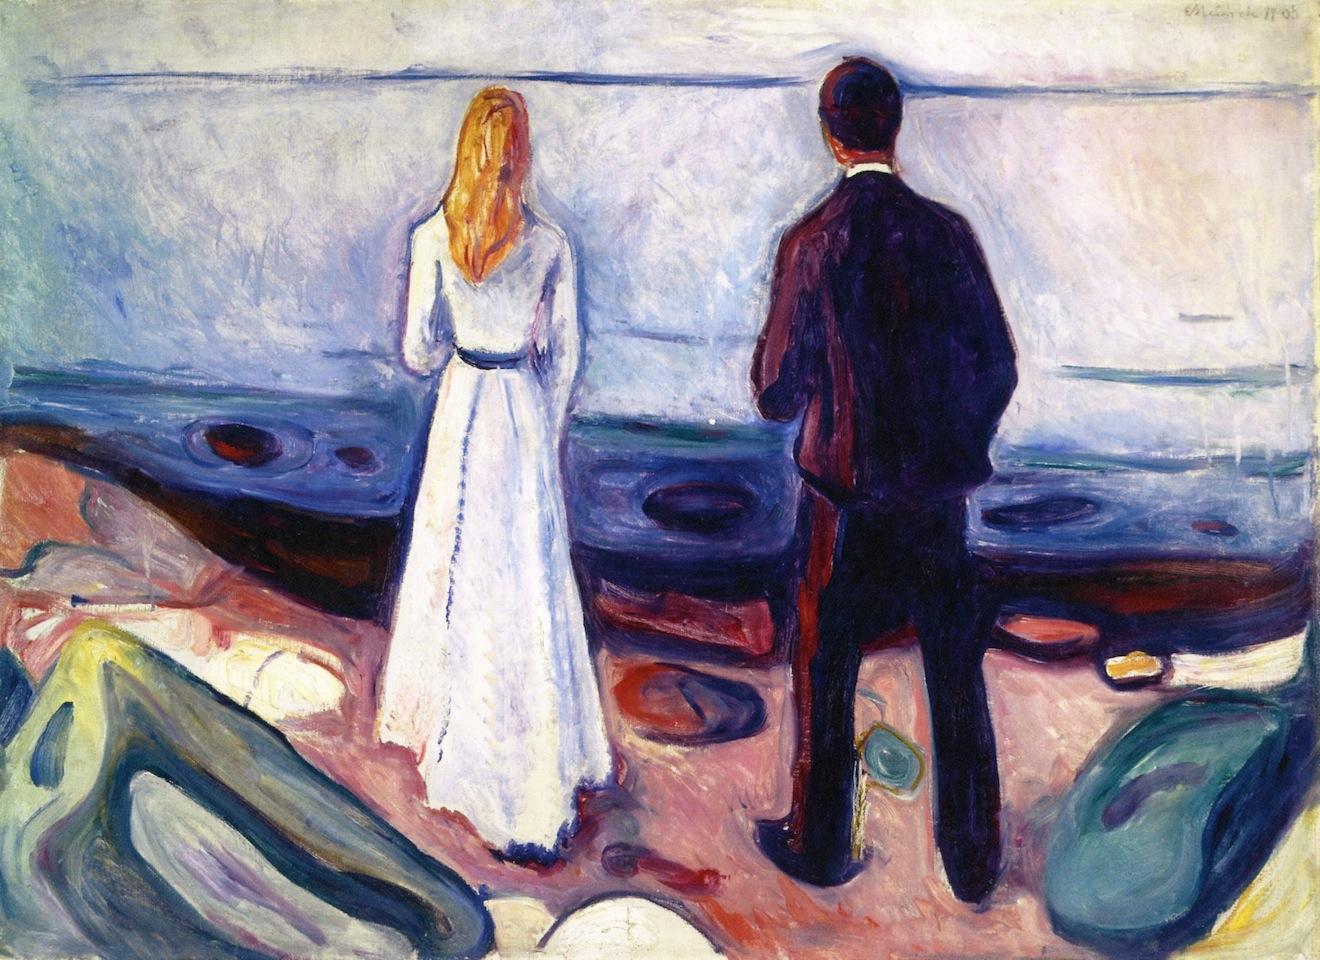 Ensamheten i en relation kan förtära inte bara relationen utan självkänslan. Vägen vidare kräver ofta att man gör det oväntade. Målning av Edvard Munch (1863–1944). Foto: Public Domain